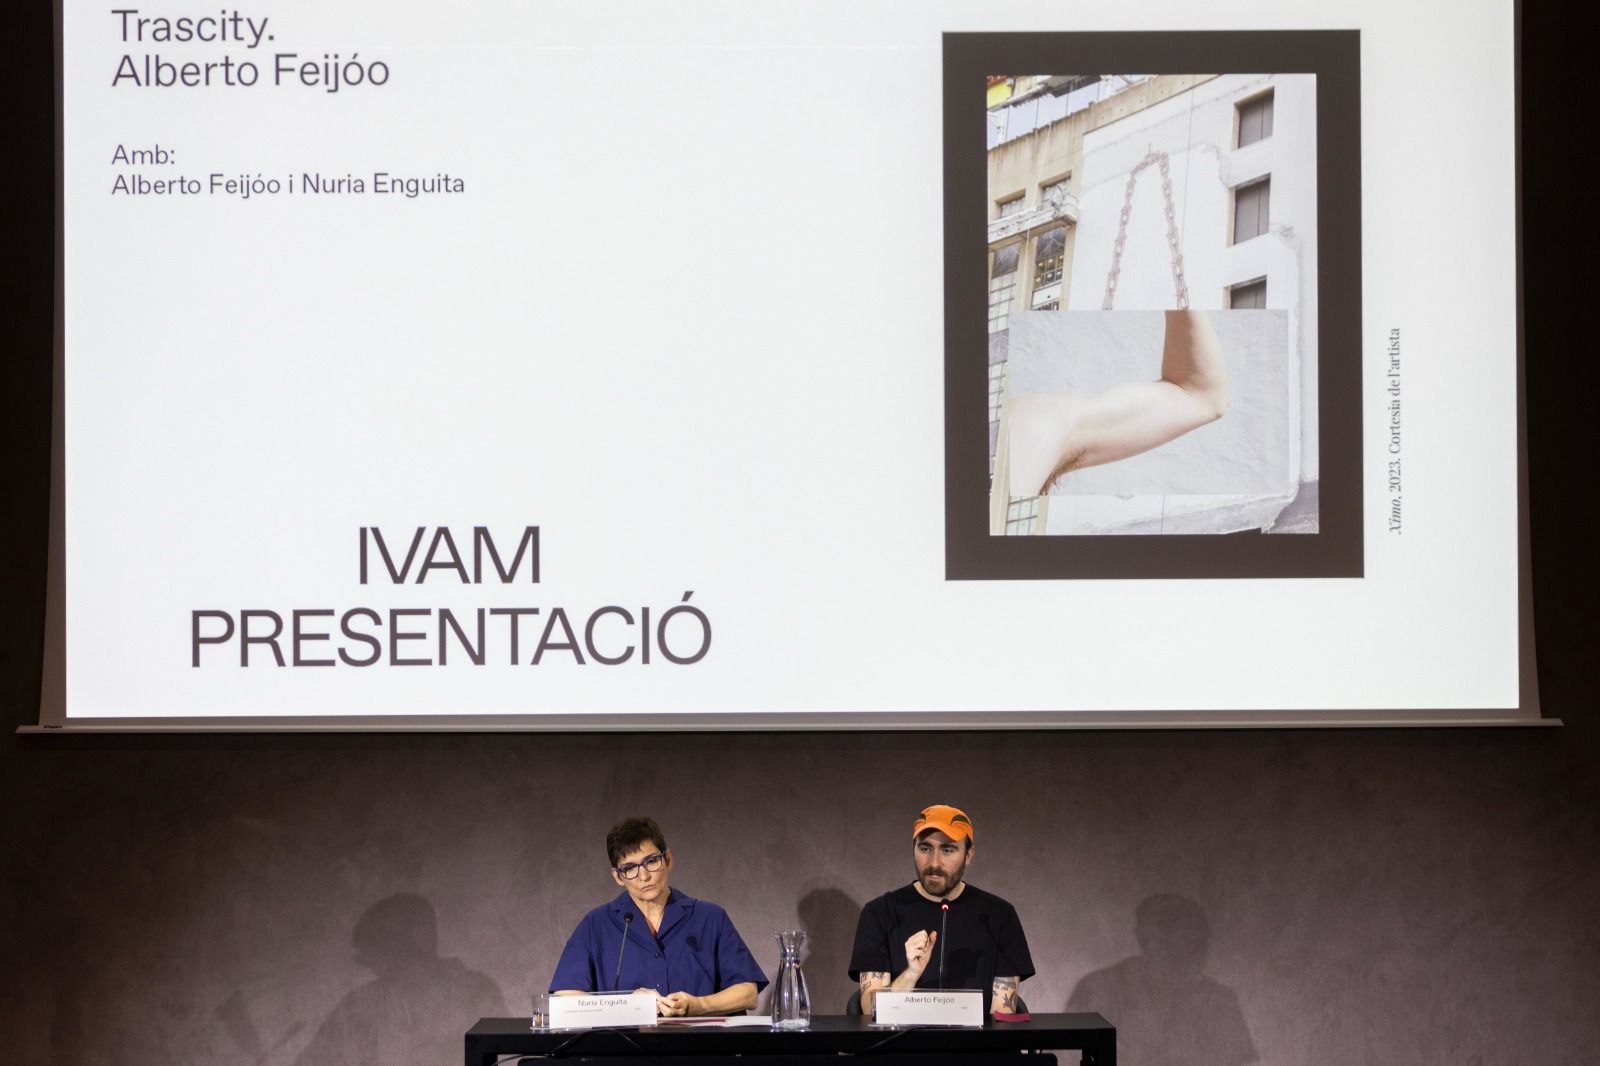 El IVAM presenta la exposición Trascity de Alberto Feijóo